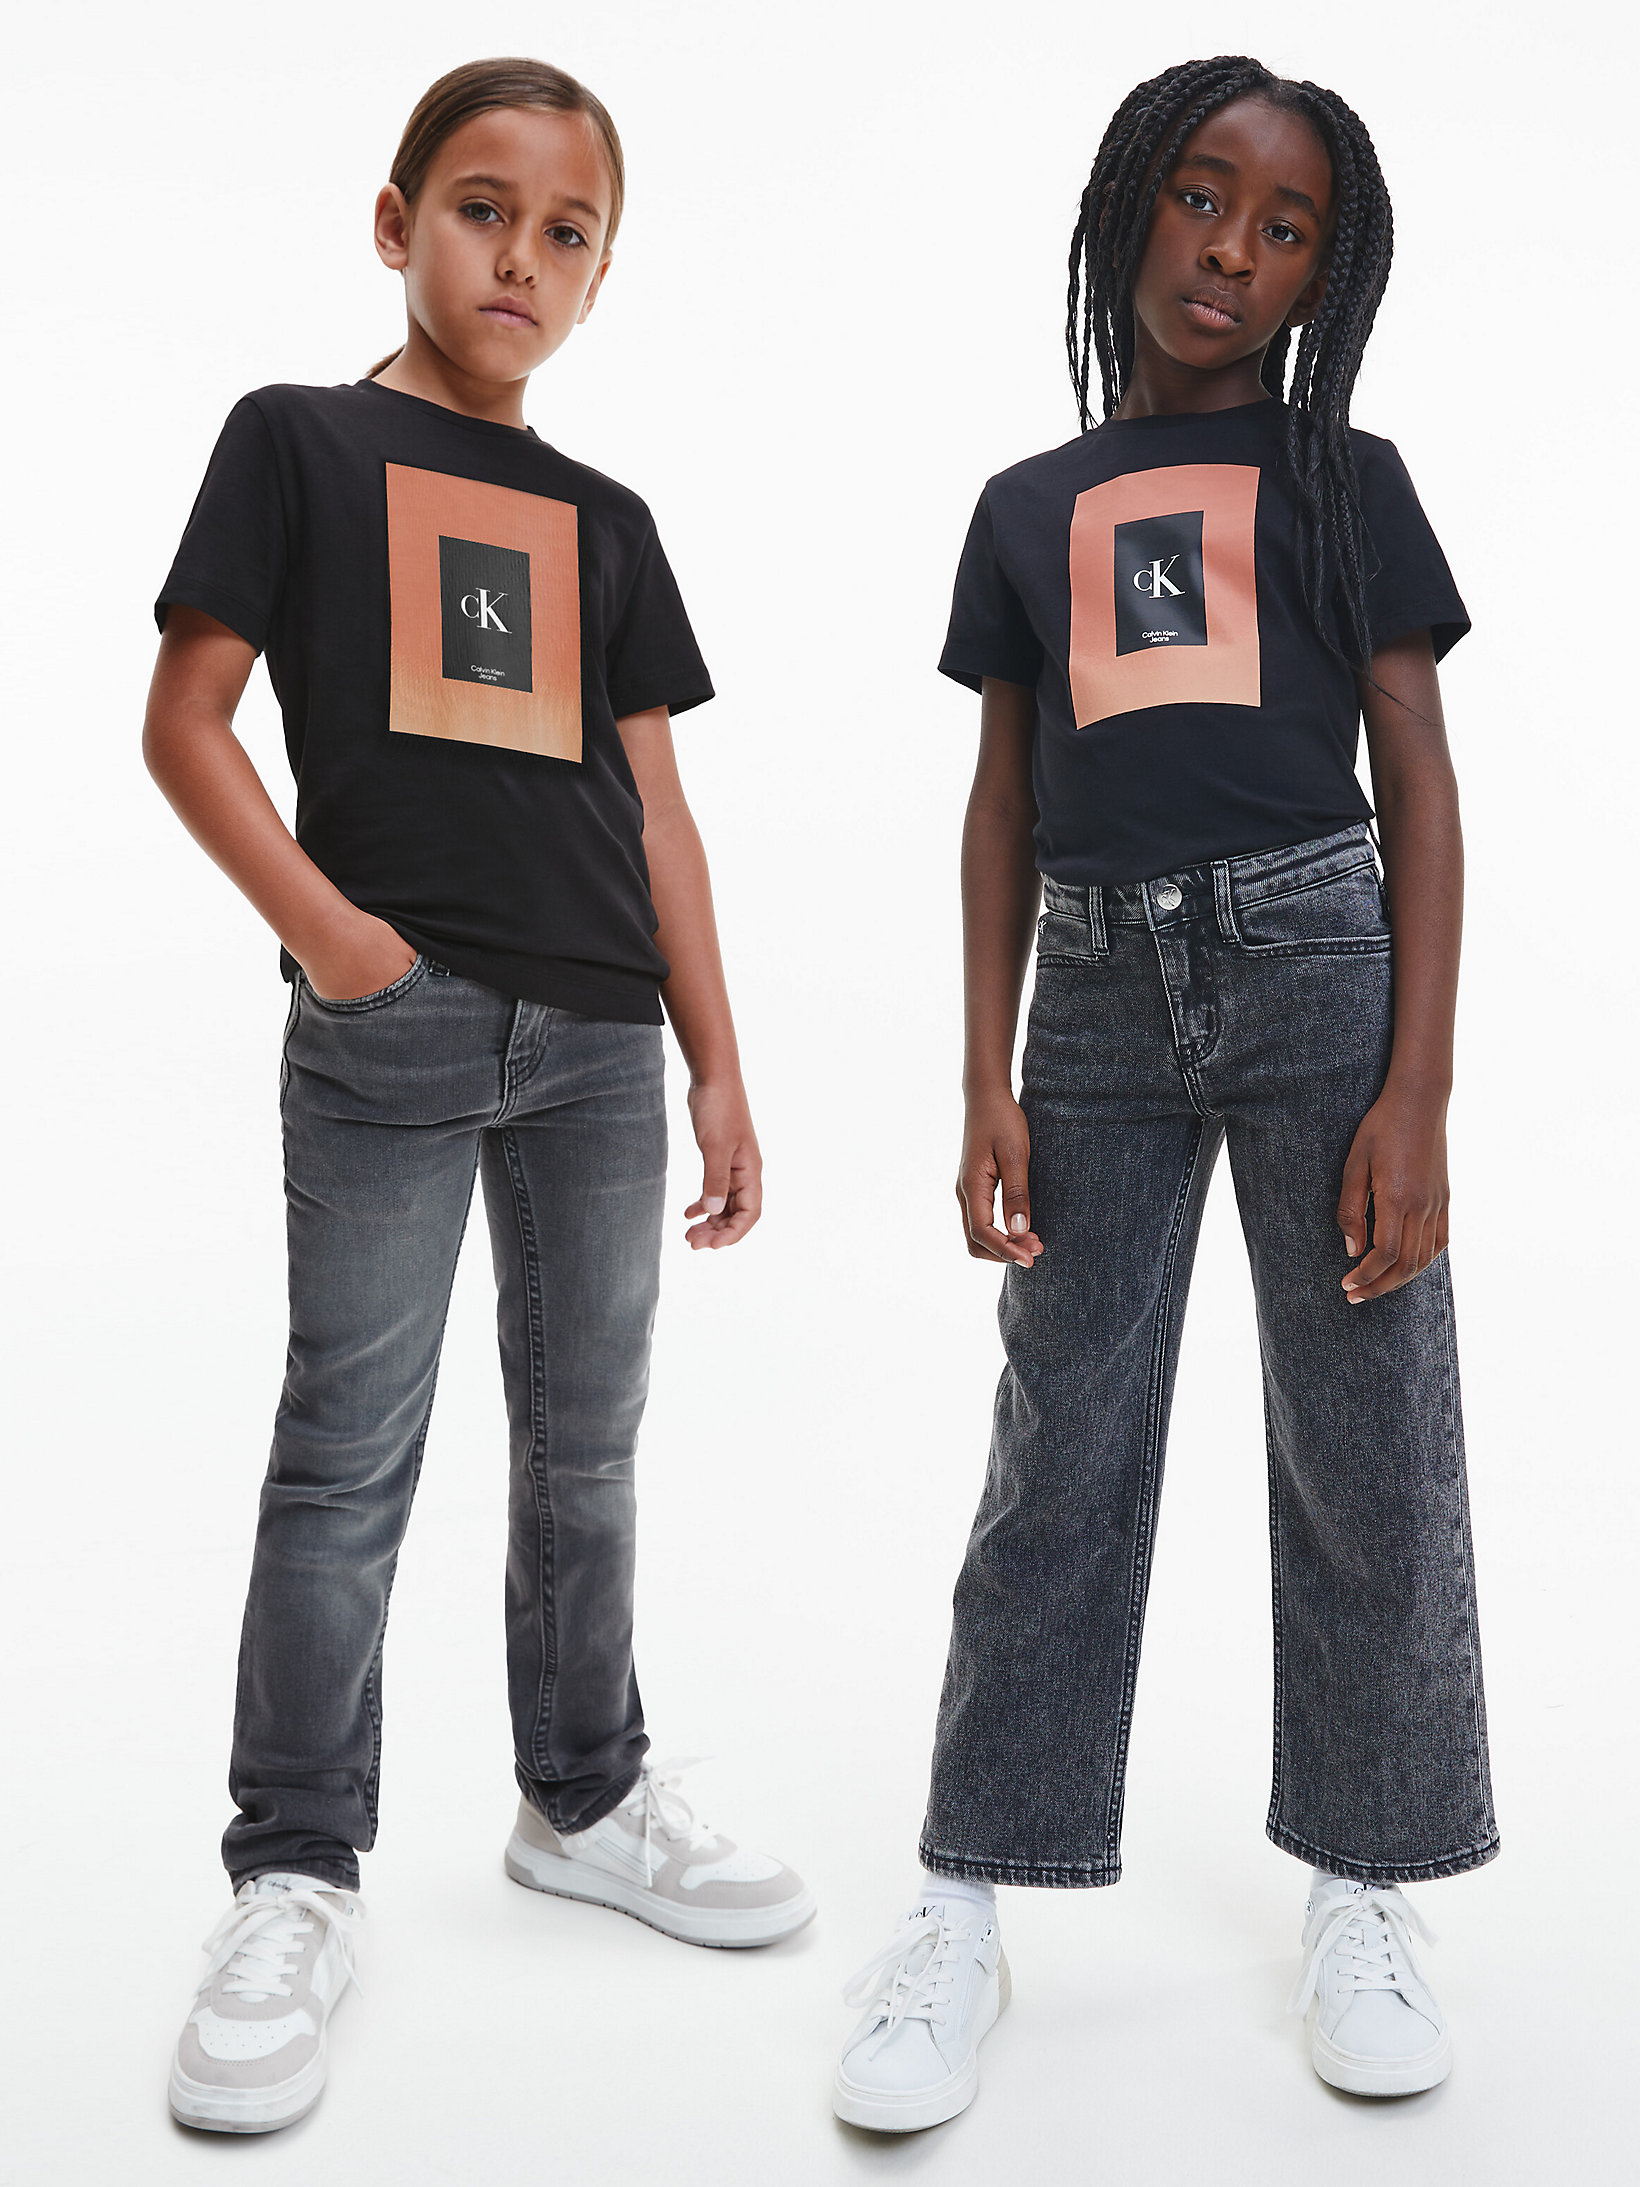 CK Black Unisex Organic Cotton T-Shirt undefined kids unisex Calvin Klein